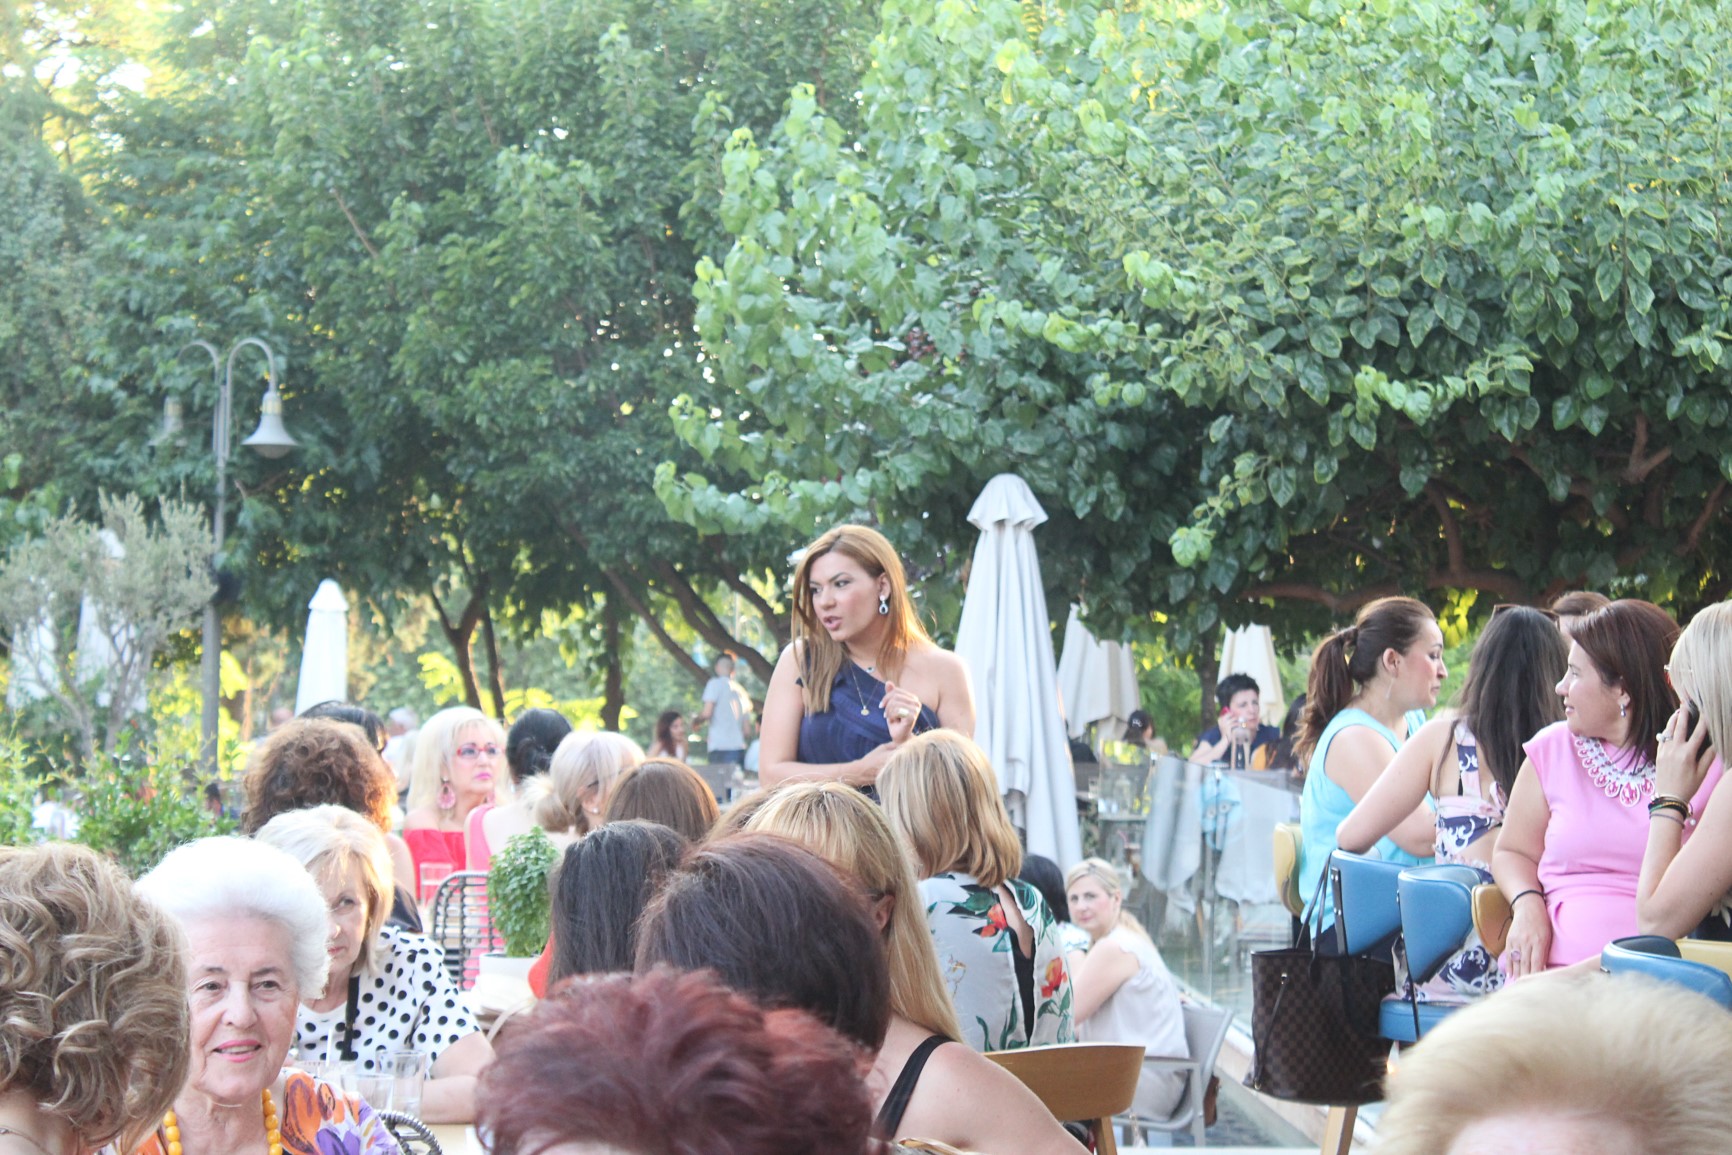 Στέλλα Μπίζιου: Οι γυναίκες πρωταγωνίστριες της φωτεινής Ελλάδας!